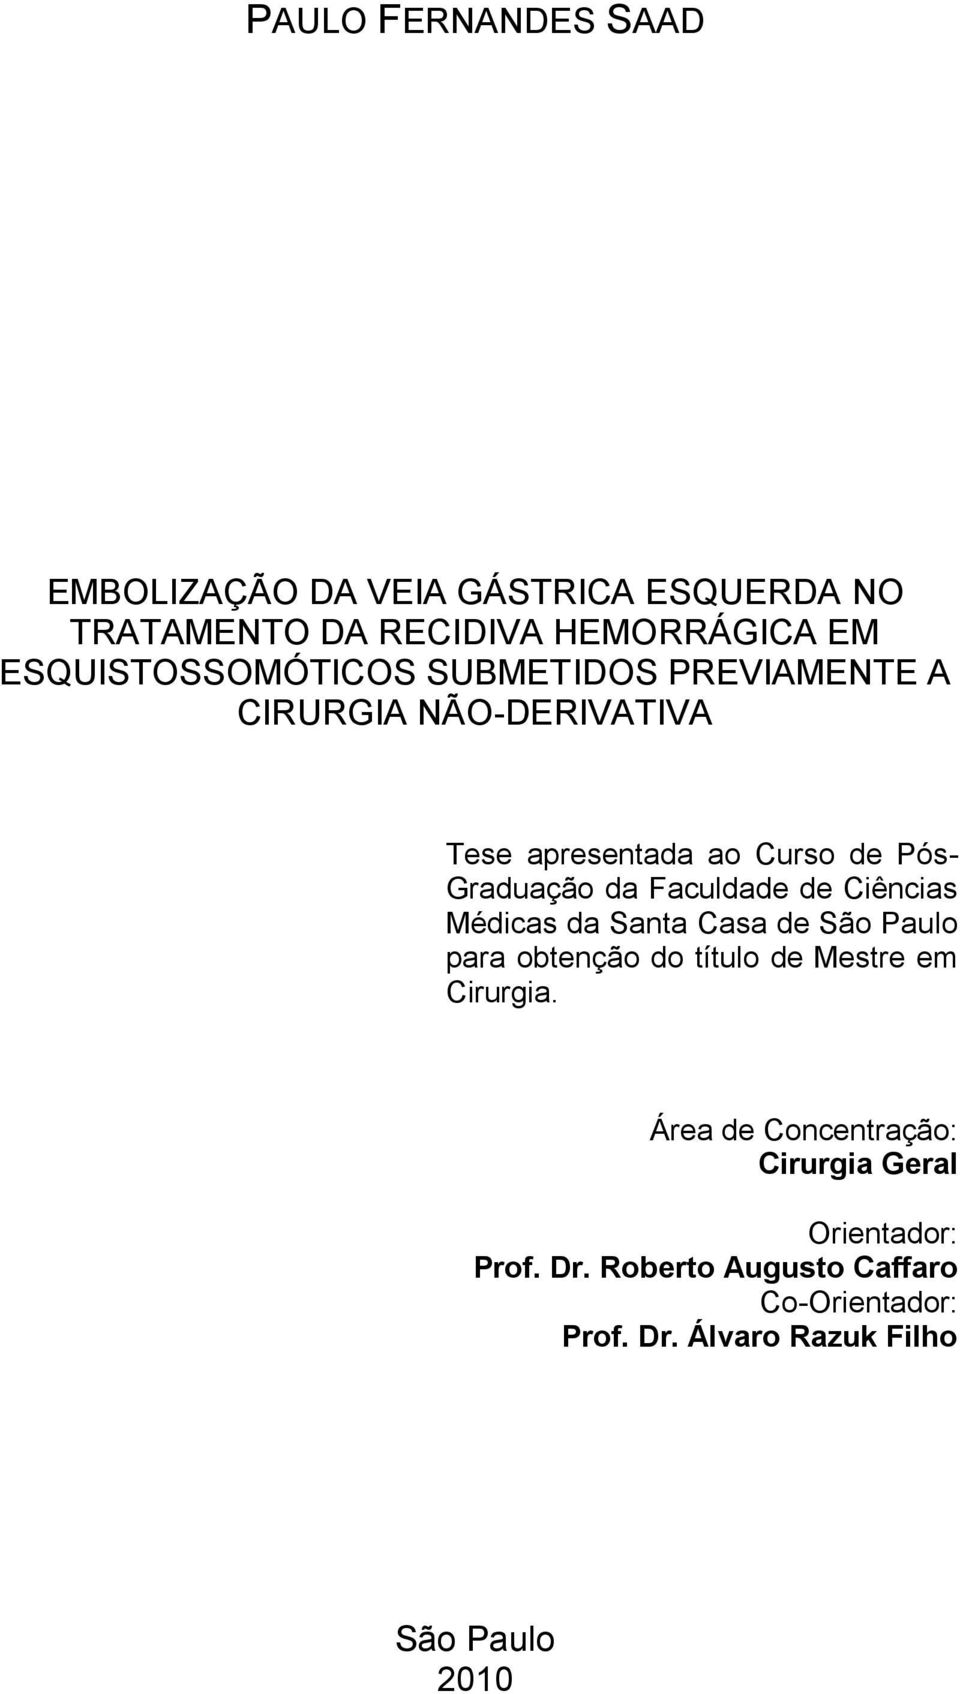 Faculdade de Ciências Médicas da Santa Casa de São Paulo para obtenção do título de Mestre em Cirurgia.